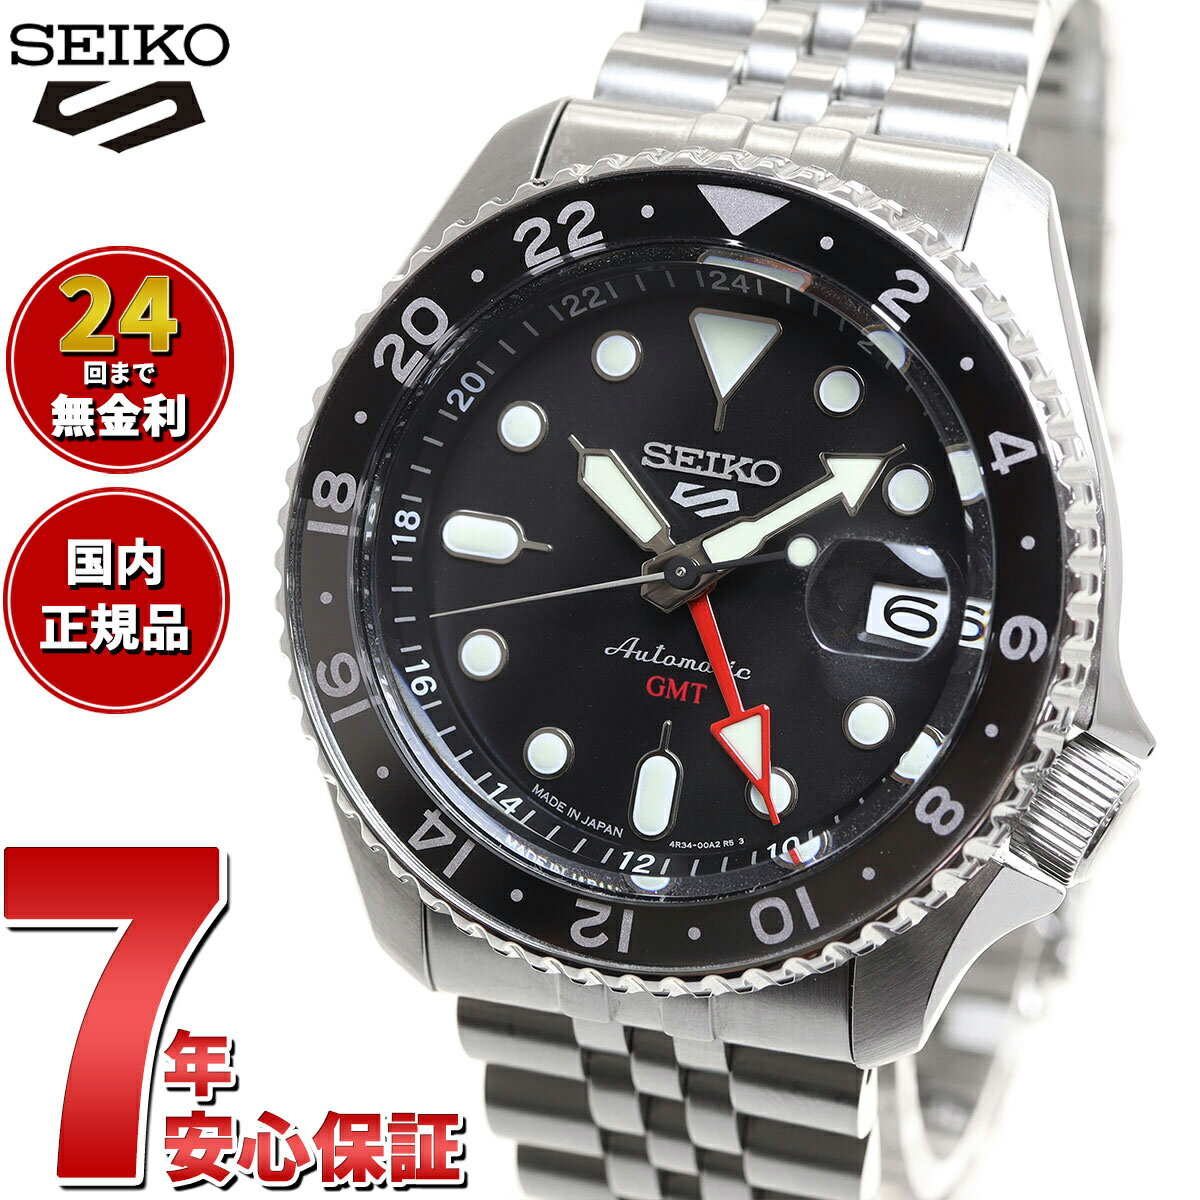 セイコーファイブ セイコー5 スポーツ SEIKO 5 SPORTS 自動巻き メカニカル 流通限定モデル 腕時計 メンズ セイコーファイブ スポーツ SKX Sports GMT SBSC001